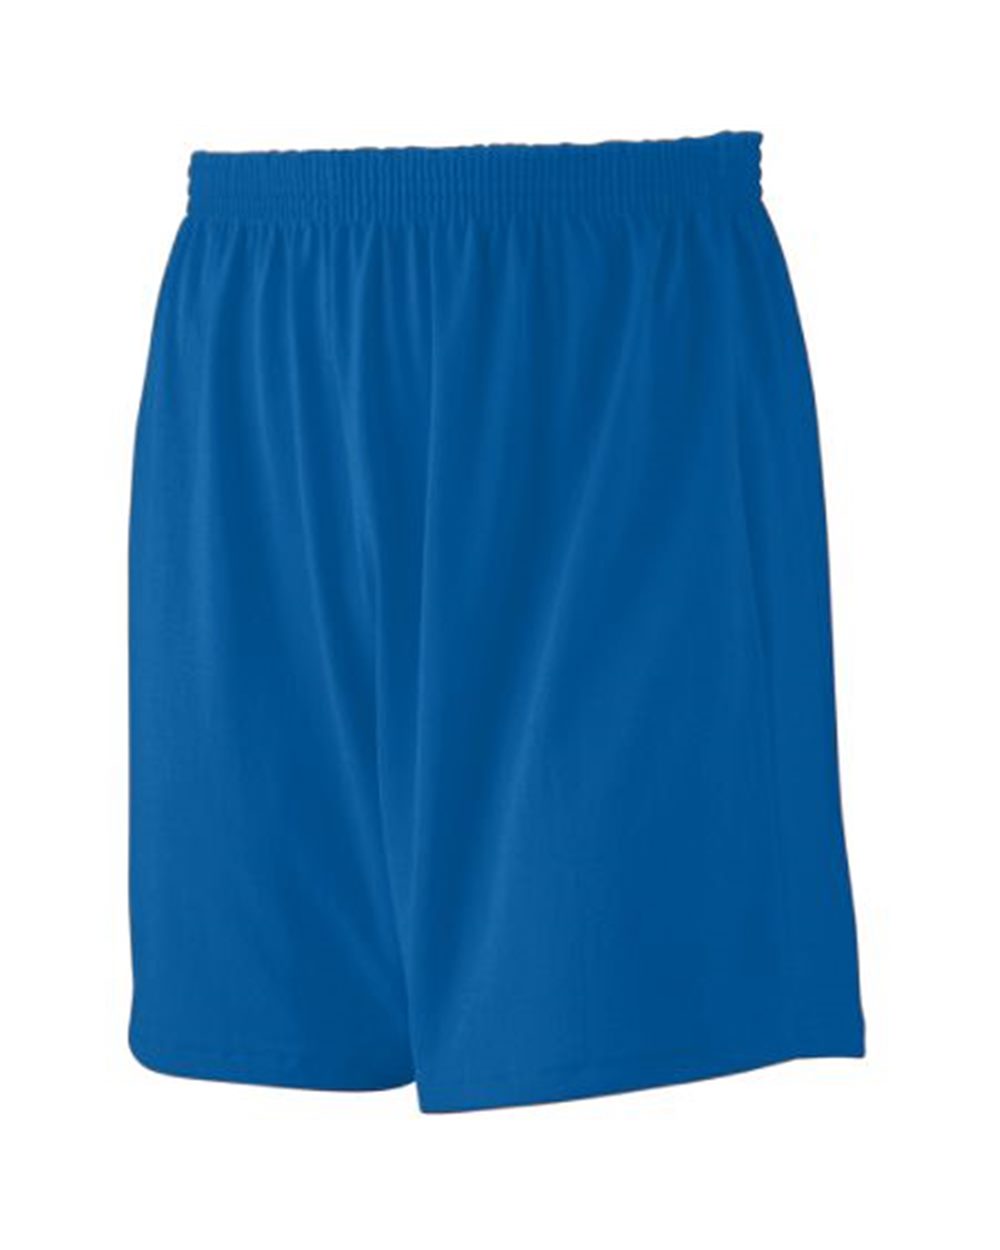 Augusta Sportswear 991 - Youth Jersey Knit Shorts